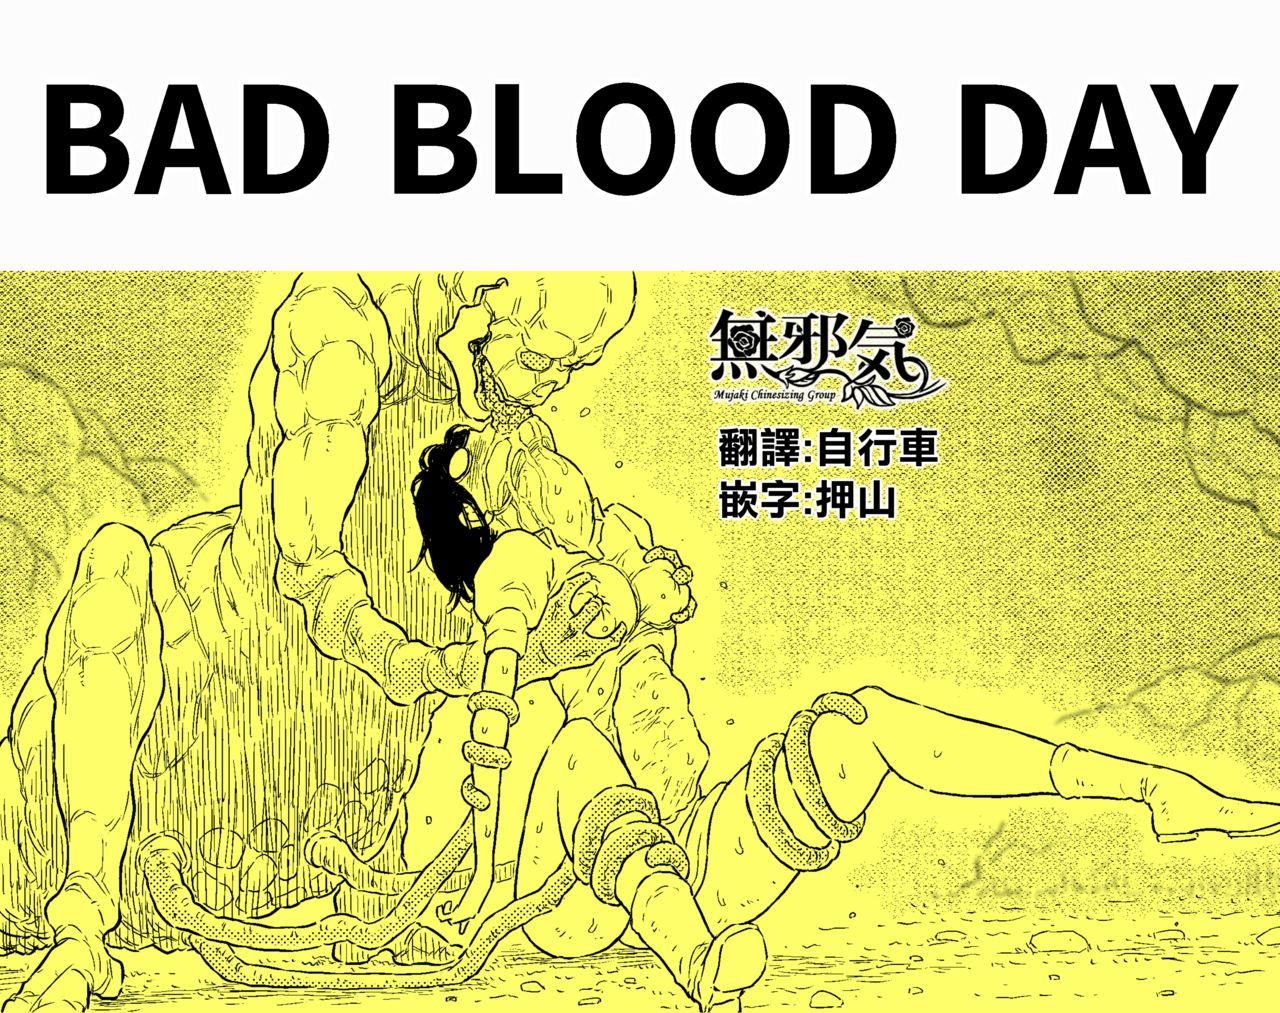 BAD BLOOD DAY『蠢く触手と壊されるヒロインの体』 0